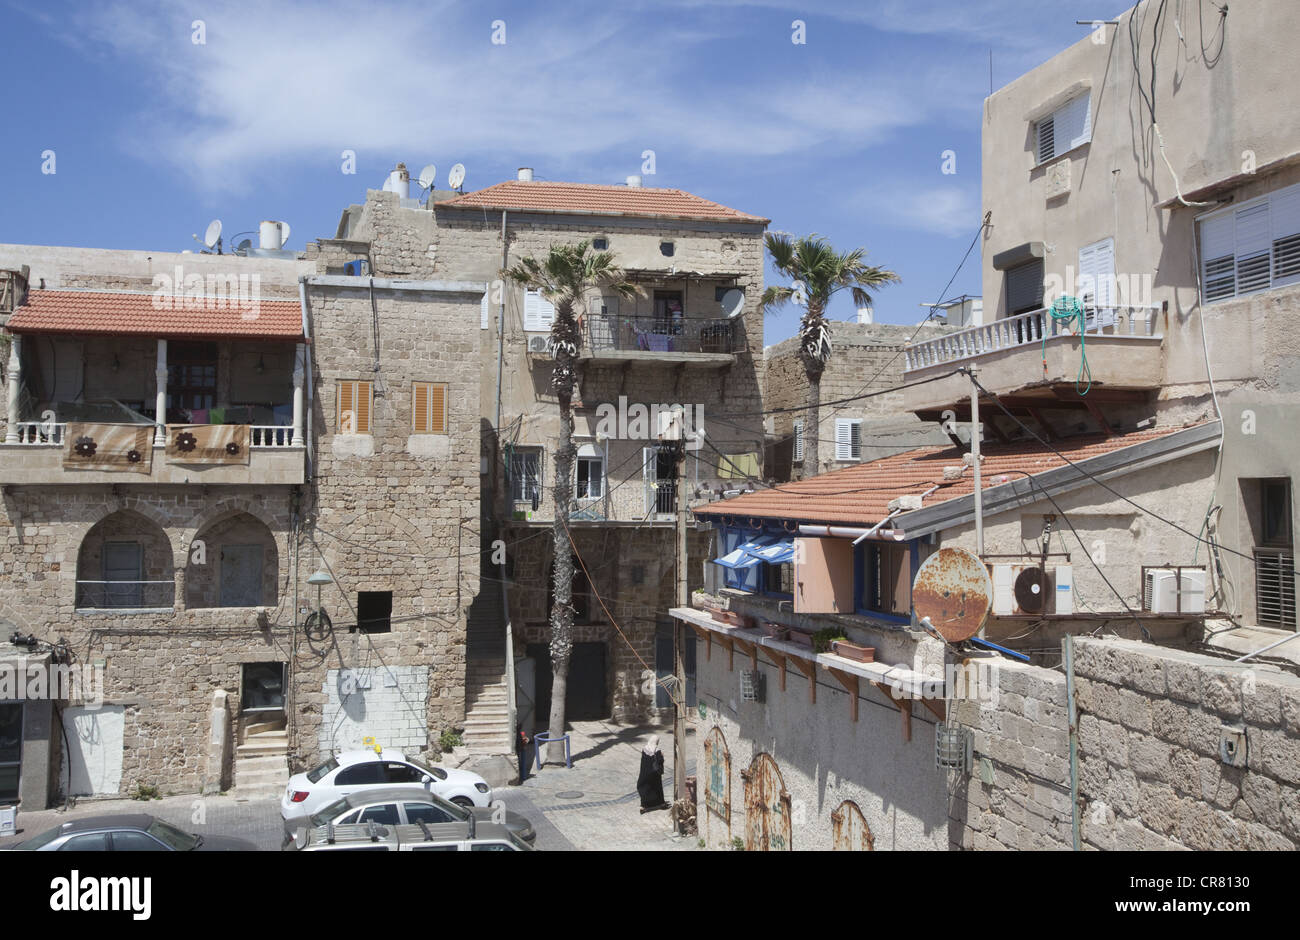 Casas antiguas en israel fotografías e imágenes de alta resolución - Alamy